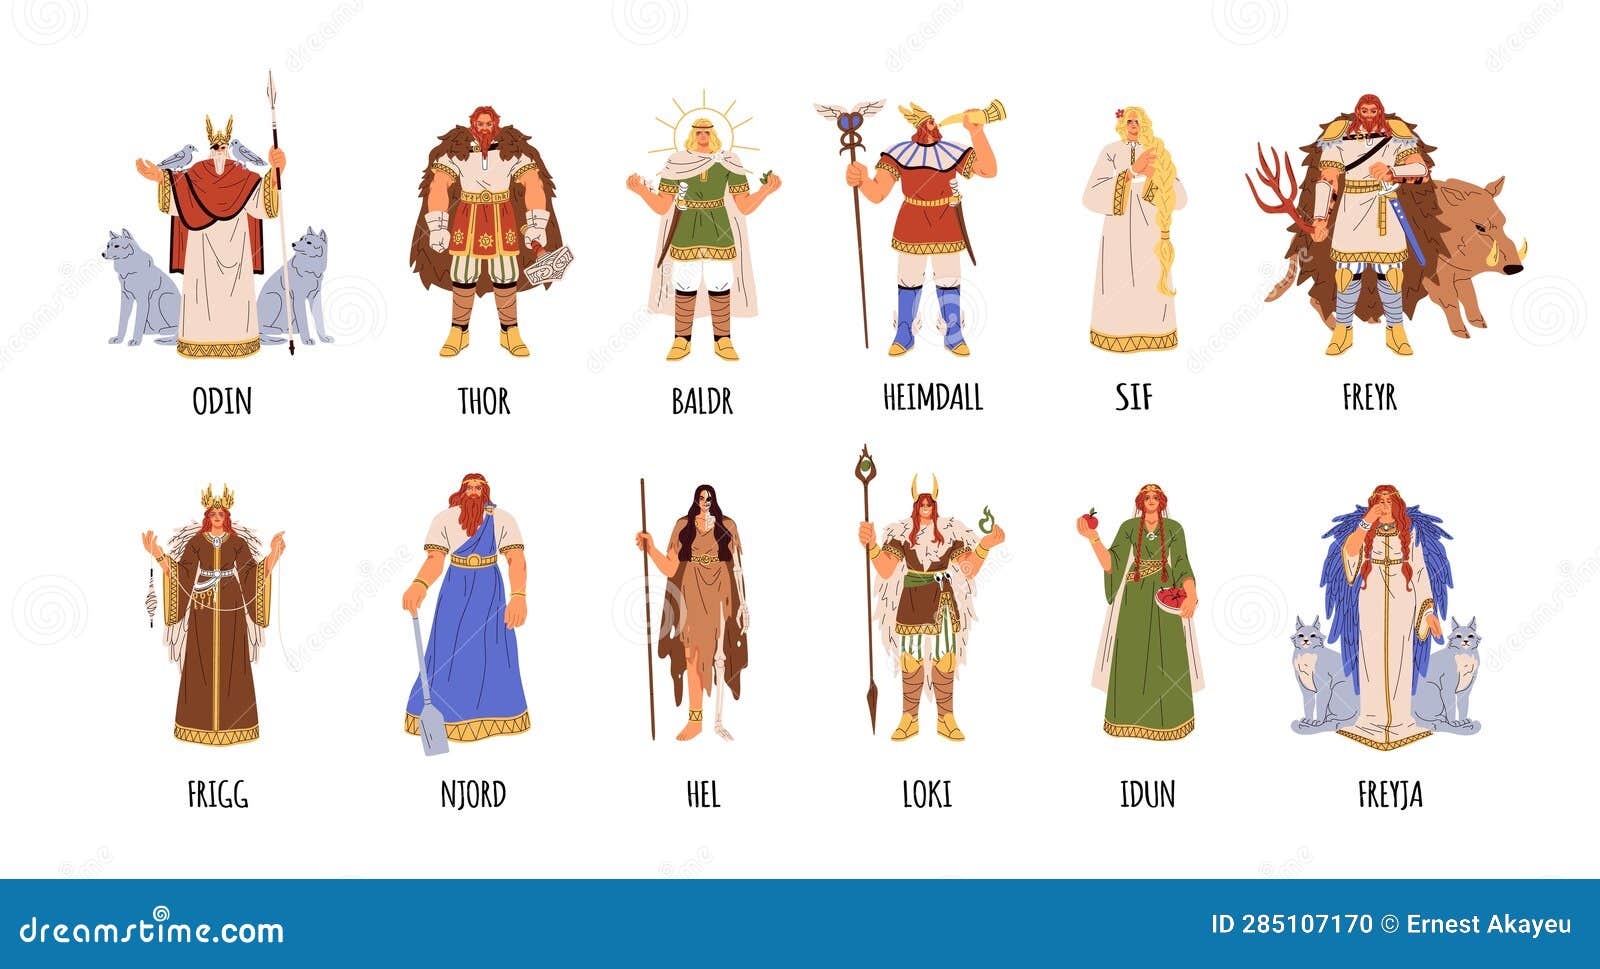 Quem é Idun? Conheça a verdade sobre deusa de Vikings